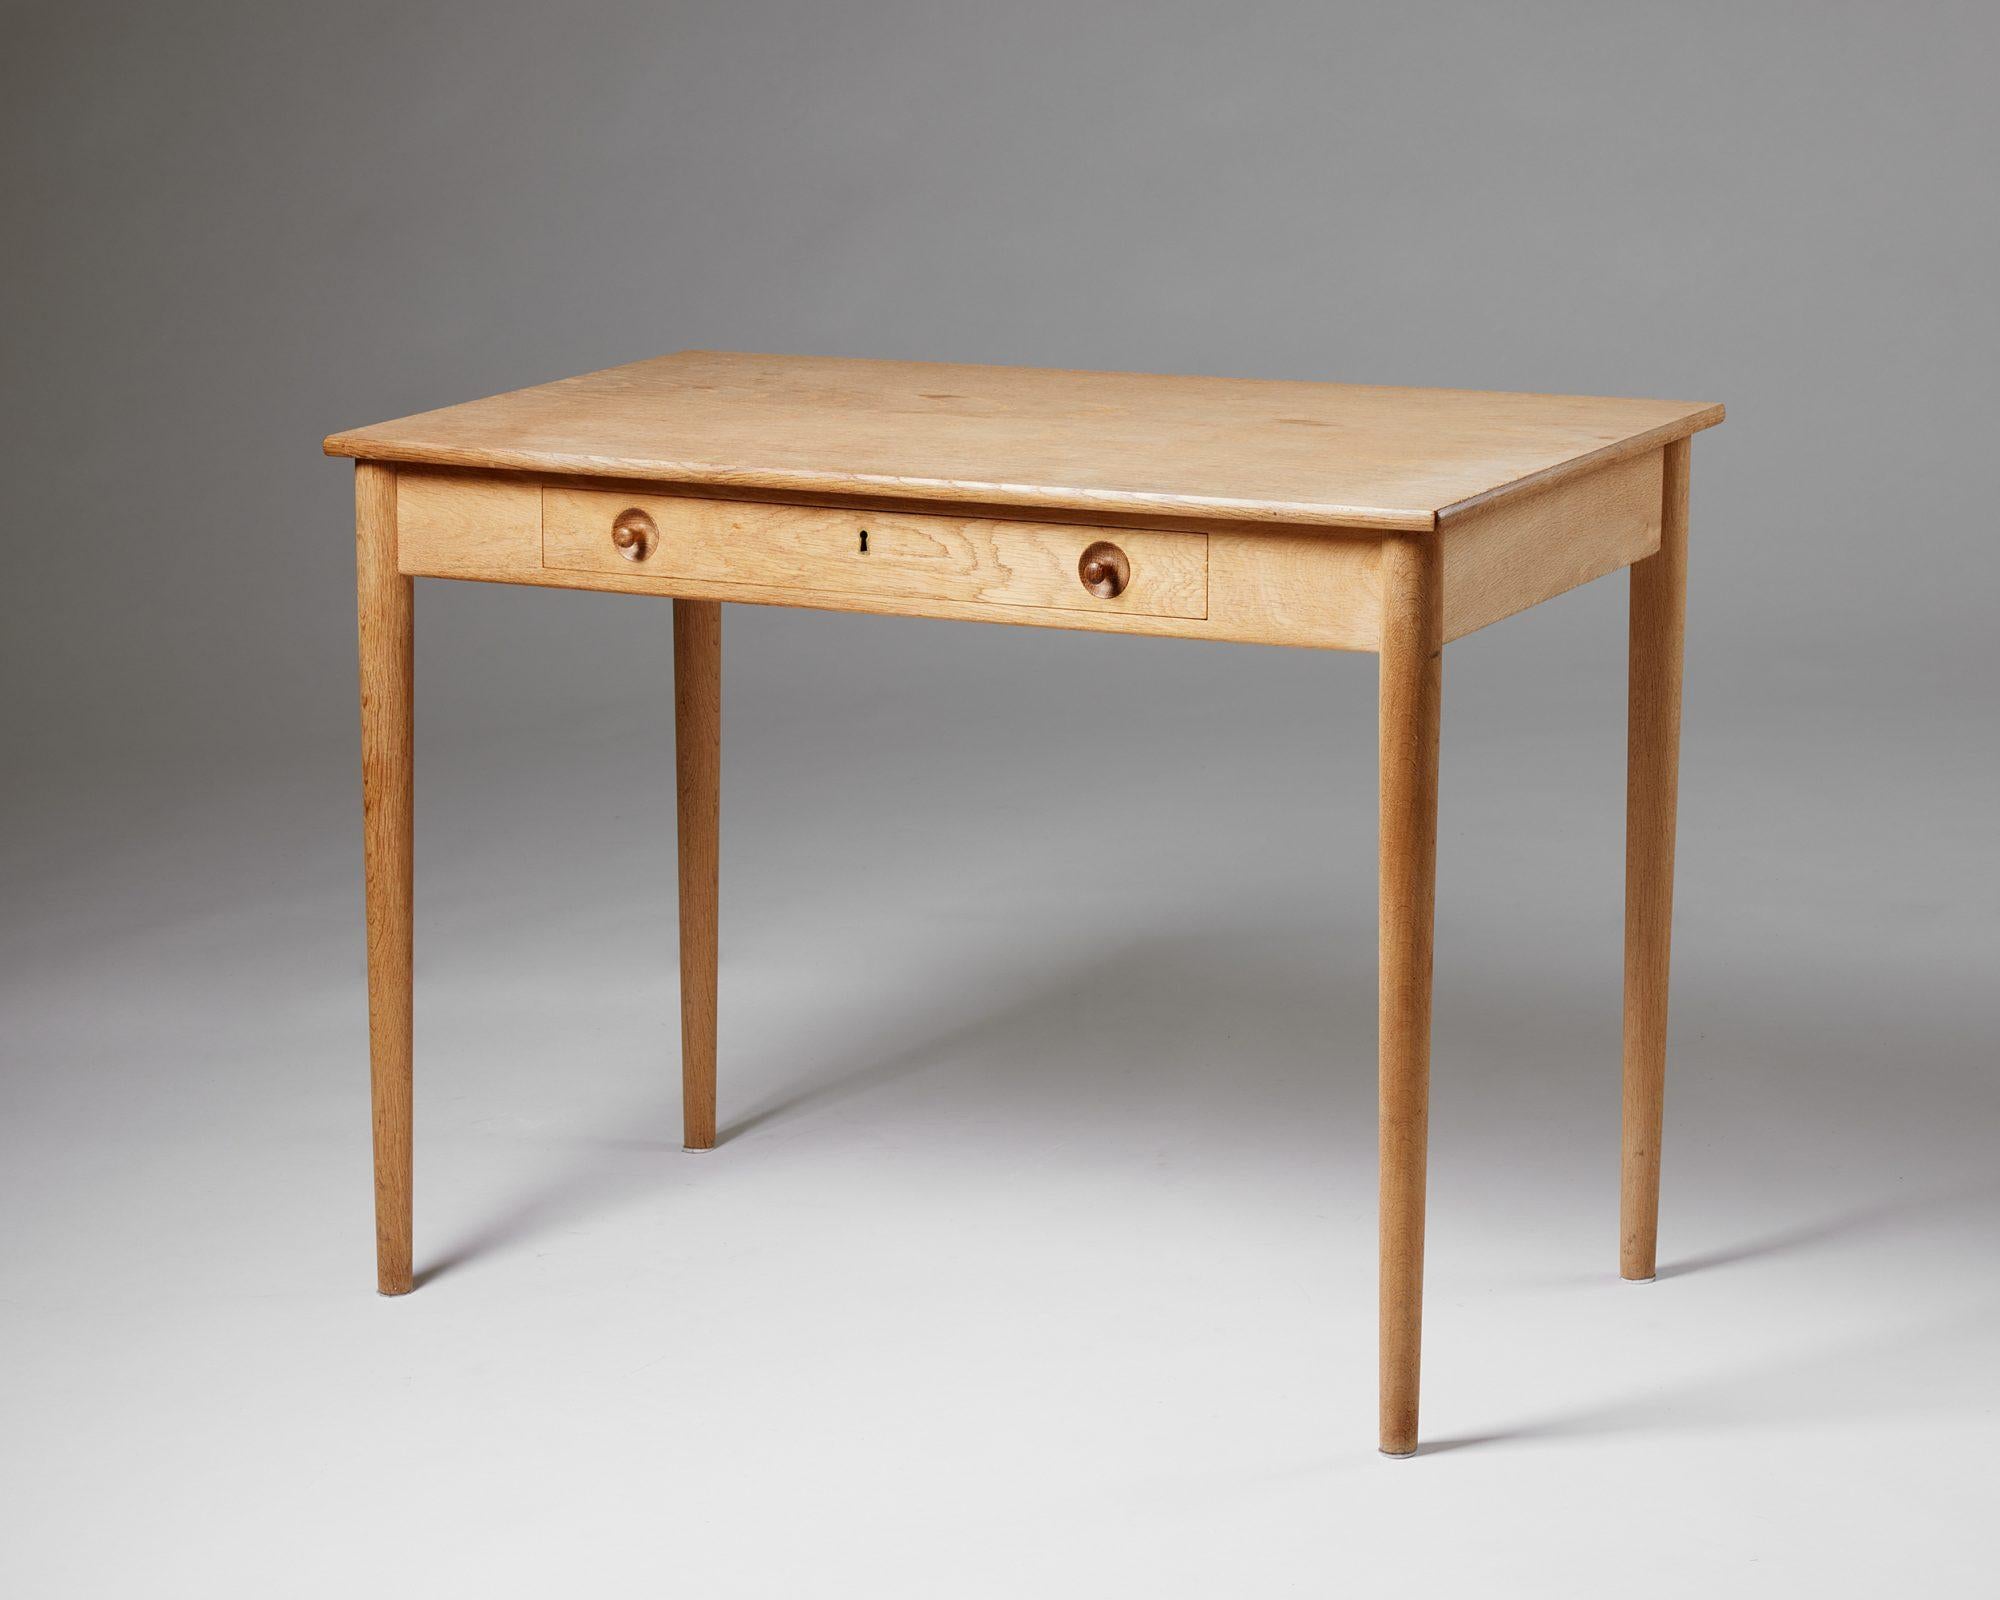 Desk model RY 32 designed by Hans Wegner, 
Denmark, 1950s.

Oak.

Measures: H: 71.5 cm / 2' 4 1/4''
L: 100 cm / 3' 3 1/4''
W: 51.5 cm / 20 1/4''.